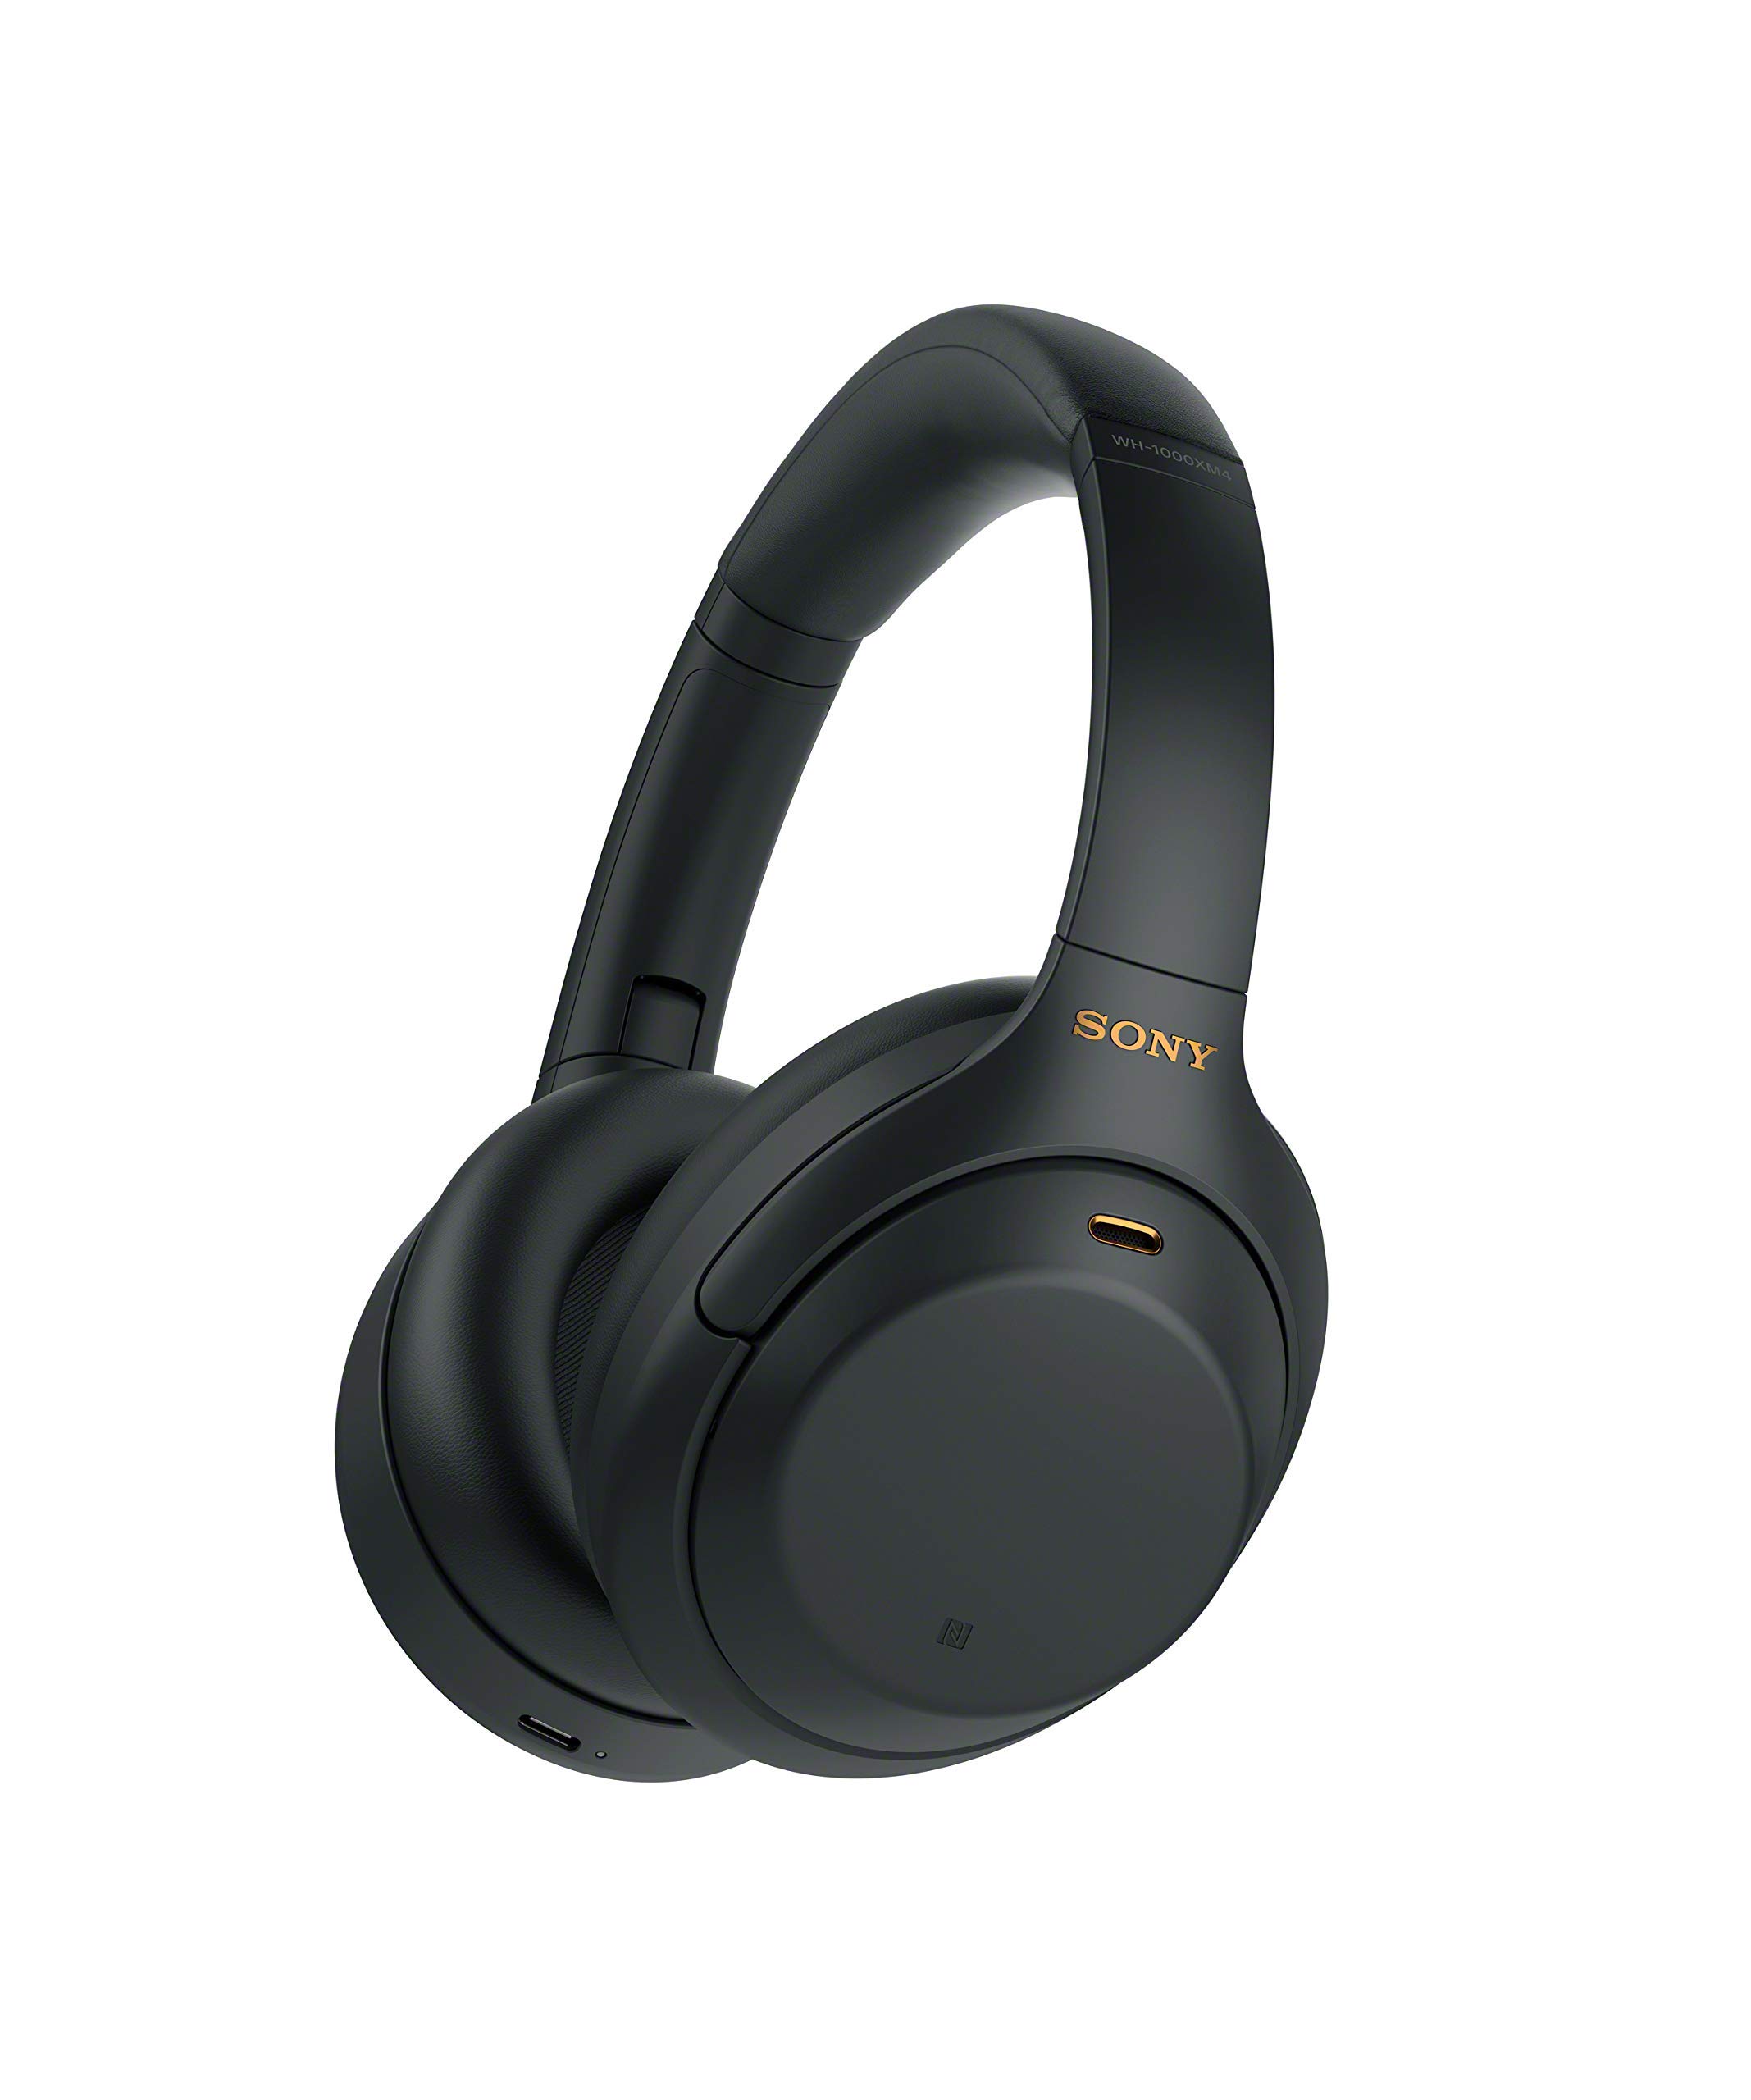 Sony Fones de ouvido sem fio com cancelamento de ruído WH-1000XM4 - preto (renovado)